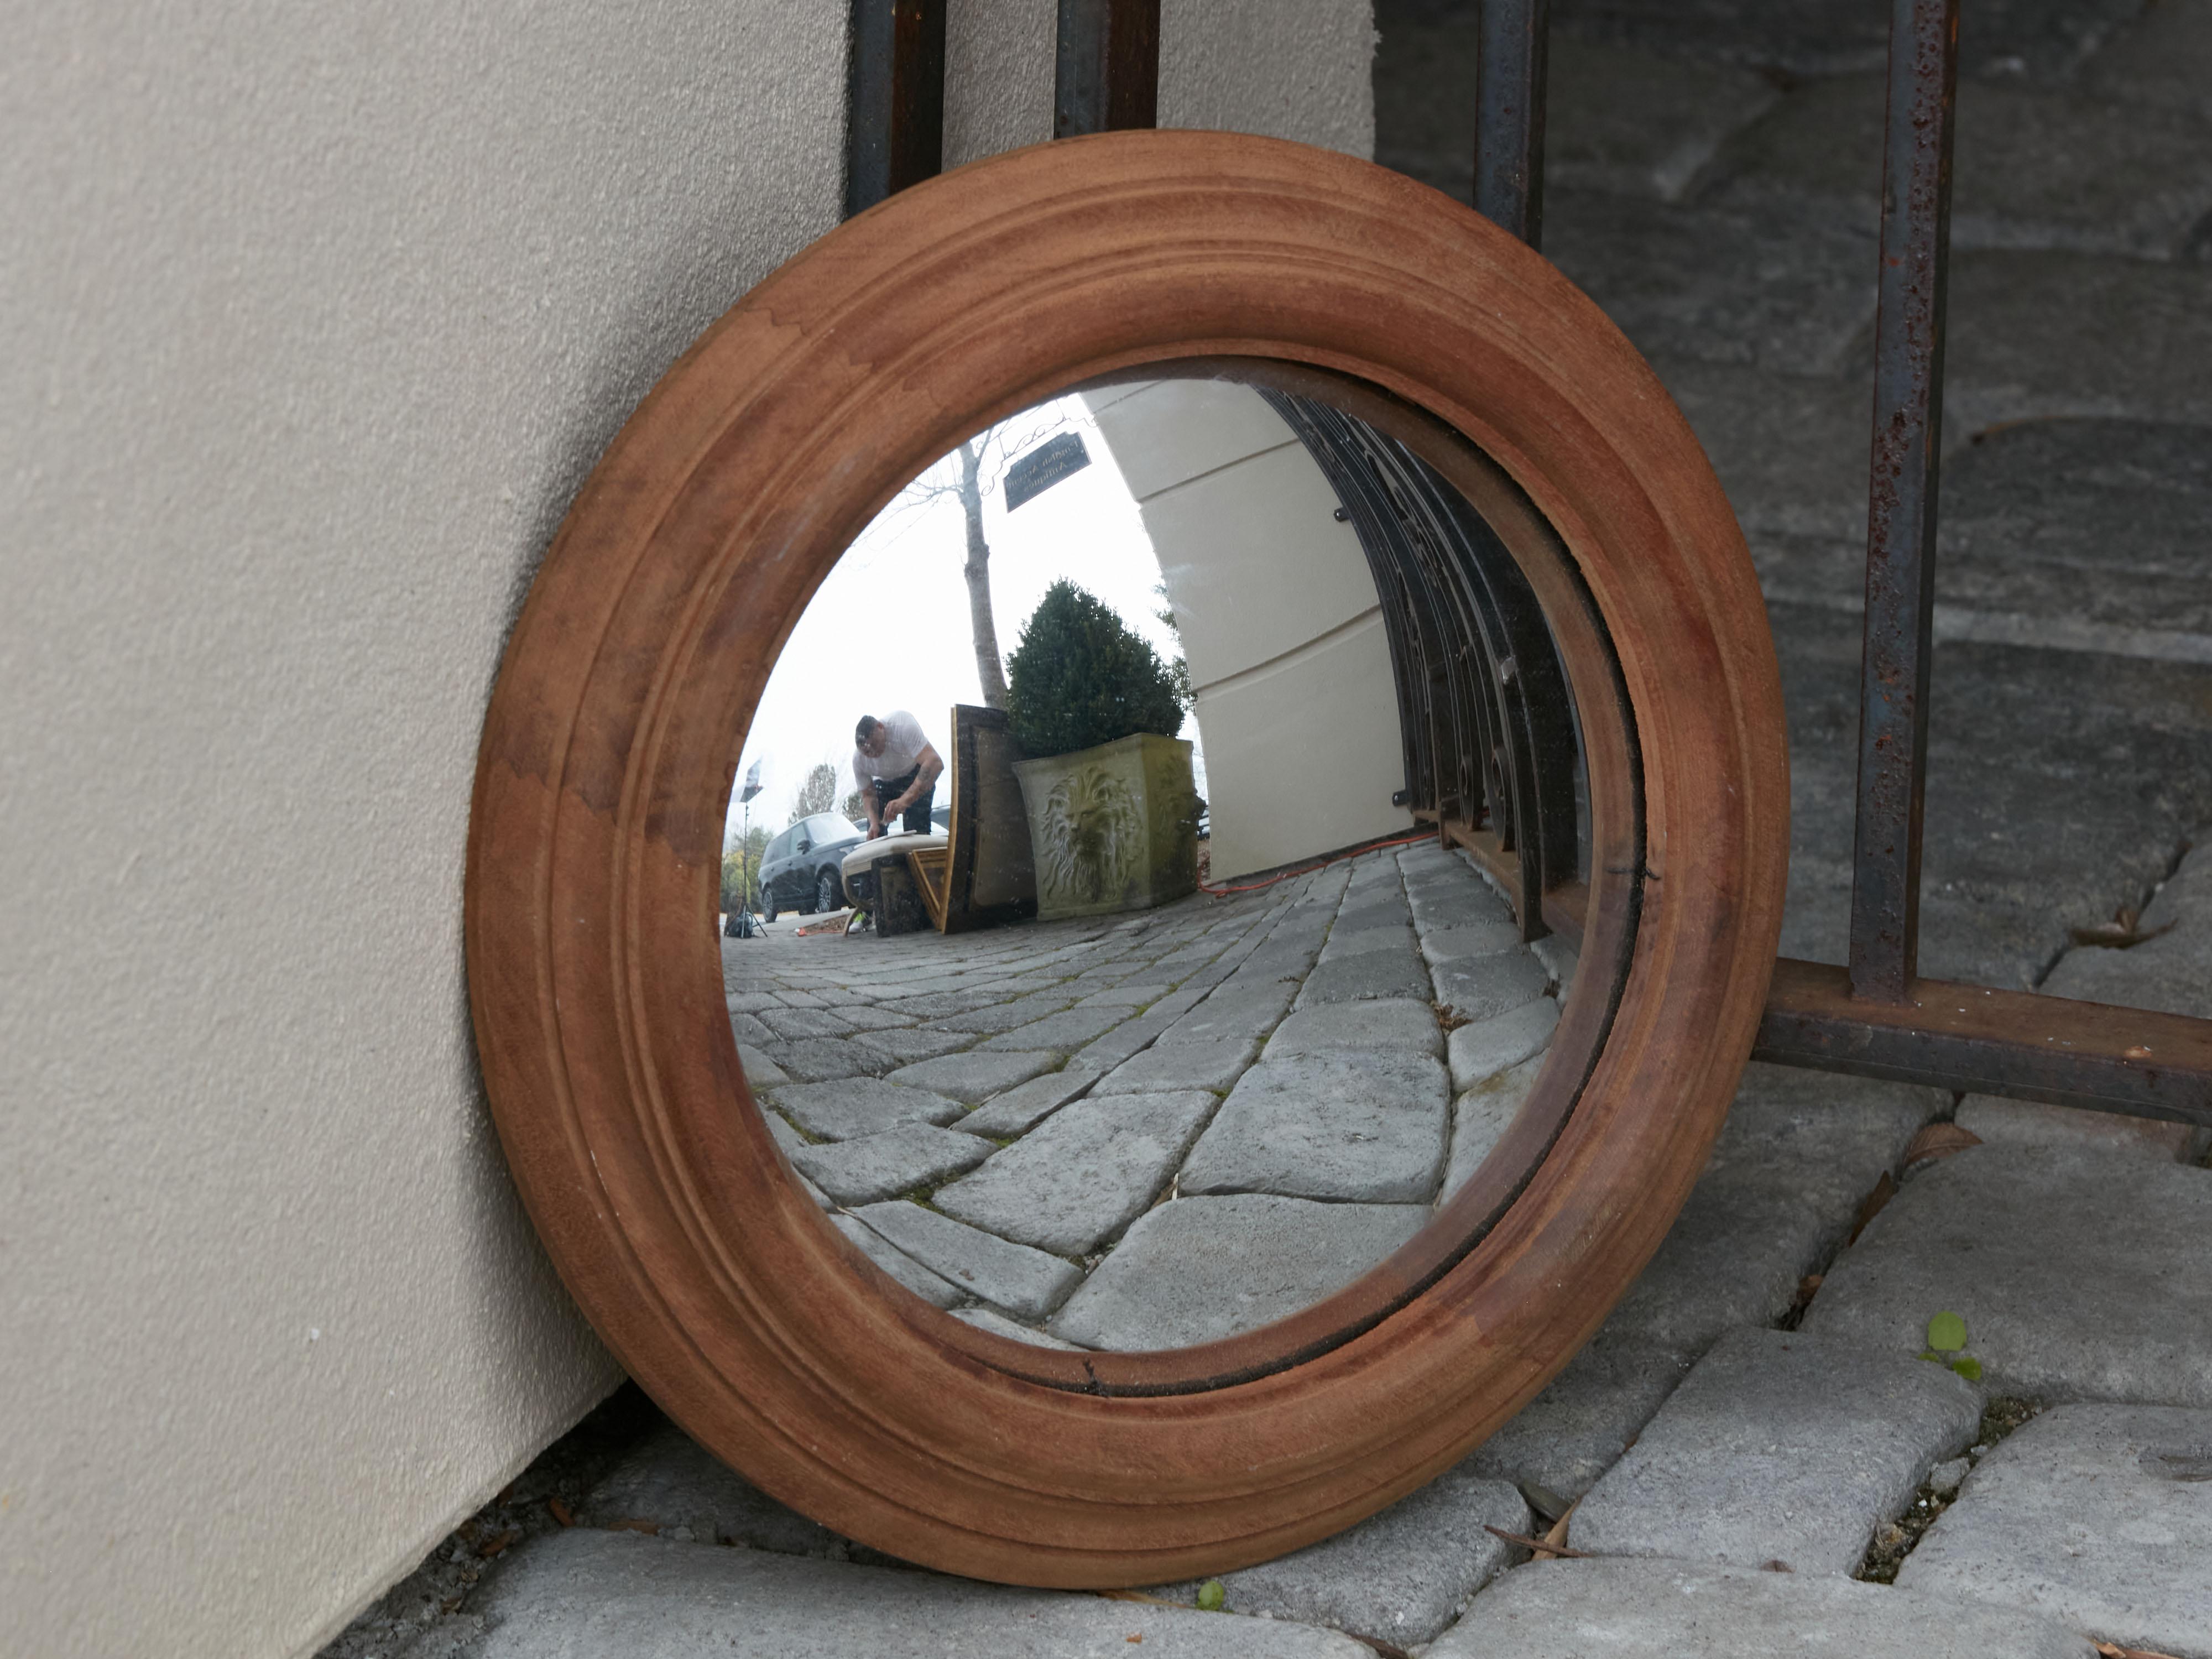 Englischer konvexer Bullseye-Spiegel mit geformtem Rahmen. Dieser in England hergestellte Wandspiegel zeichnet sich durch einen einfachen runden Rahmen mit geformten Akzenten aus, der einen konvexen Spiegel umgibt, der für seine verzerrte Reflexion